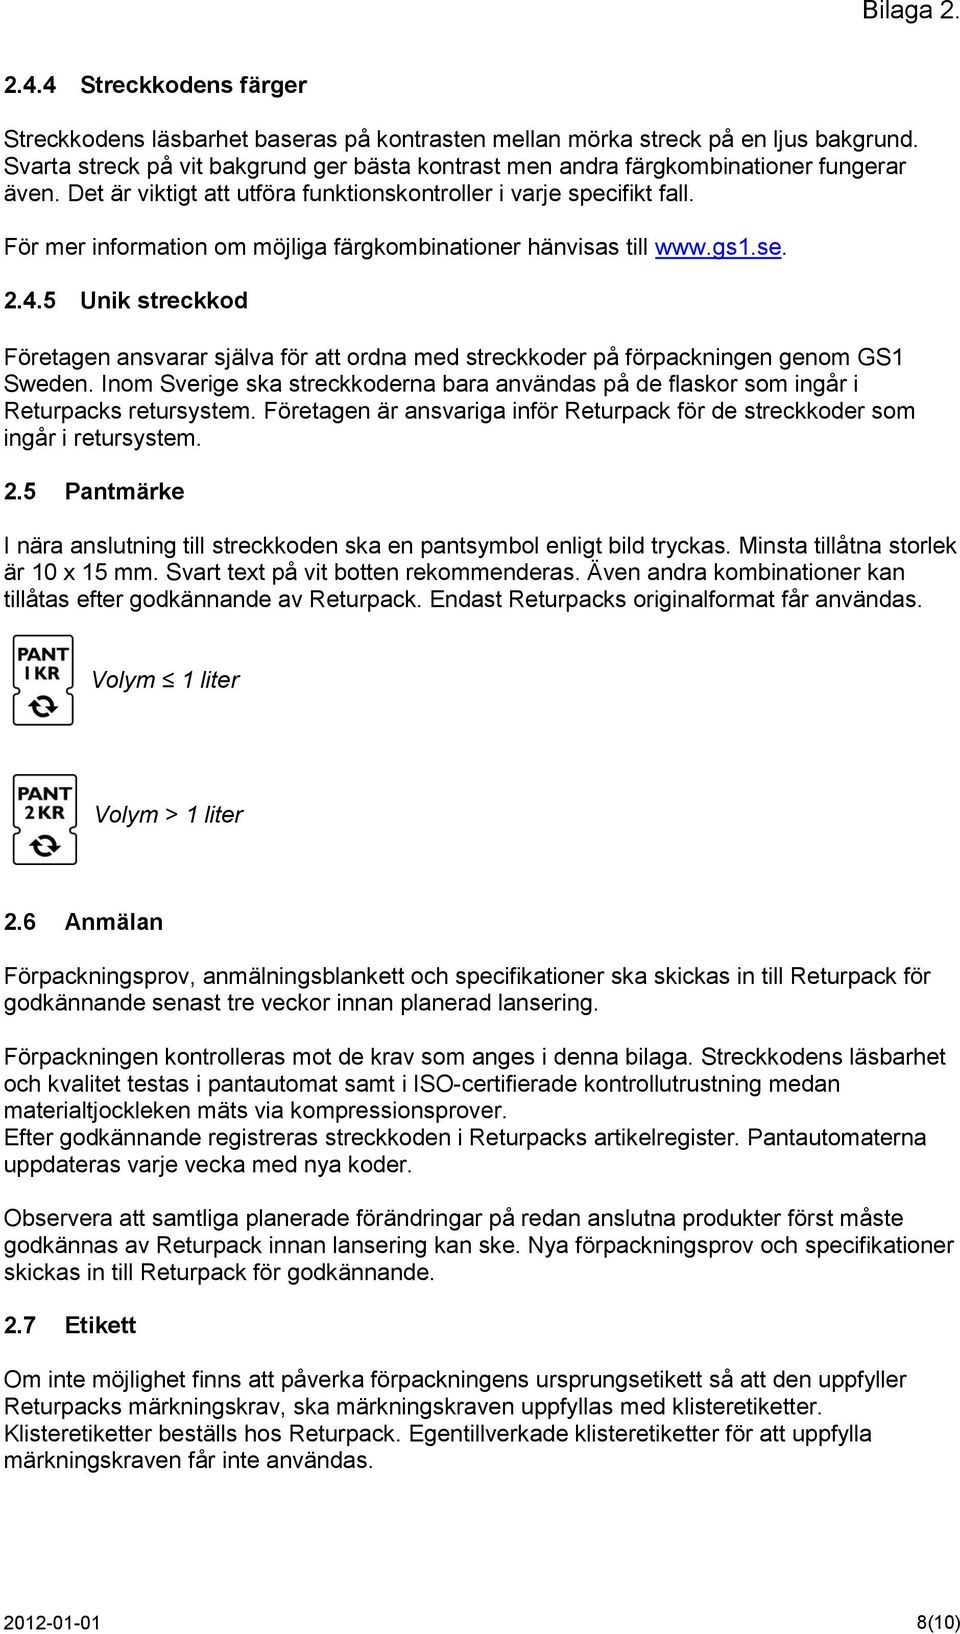 För mer information om möjliga färgkombinationer hänvisas till www.gs1.se. 2.4.5 Unik streckkod Företagen ansvarar själva för att ordna med streckkoder på förpackningen genom GS1 Sweden.